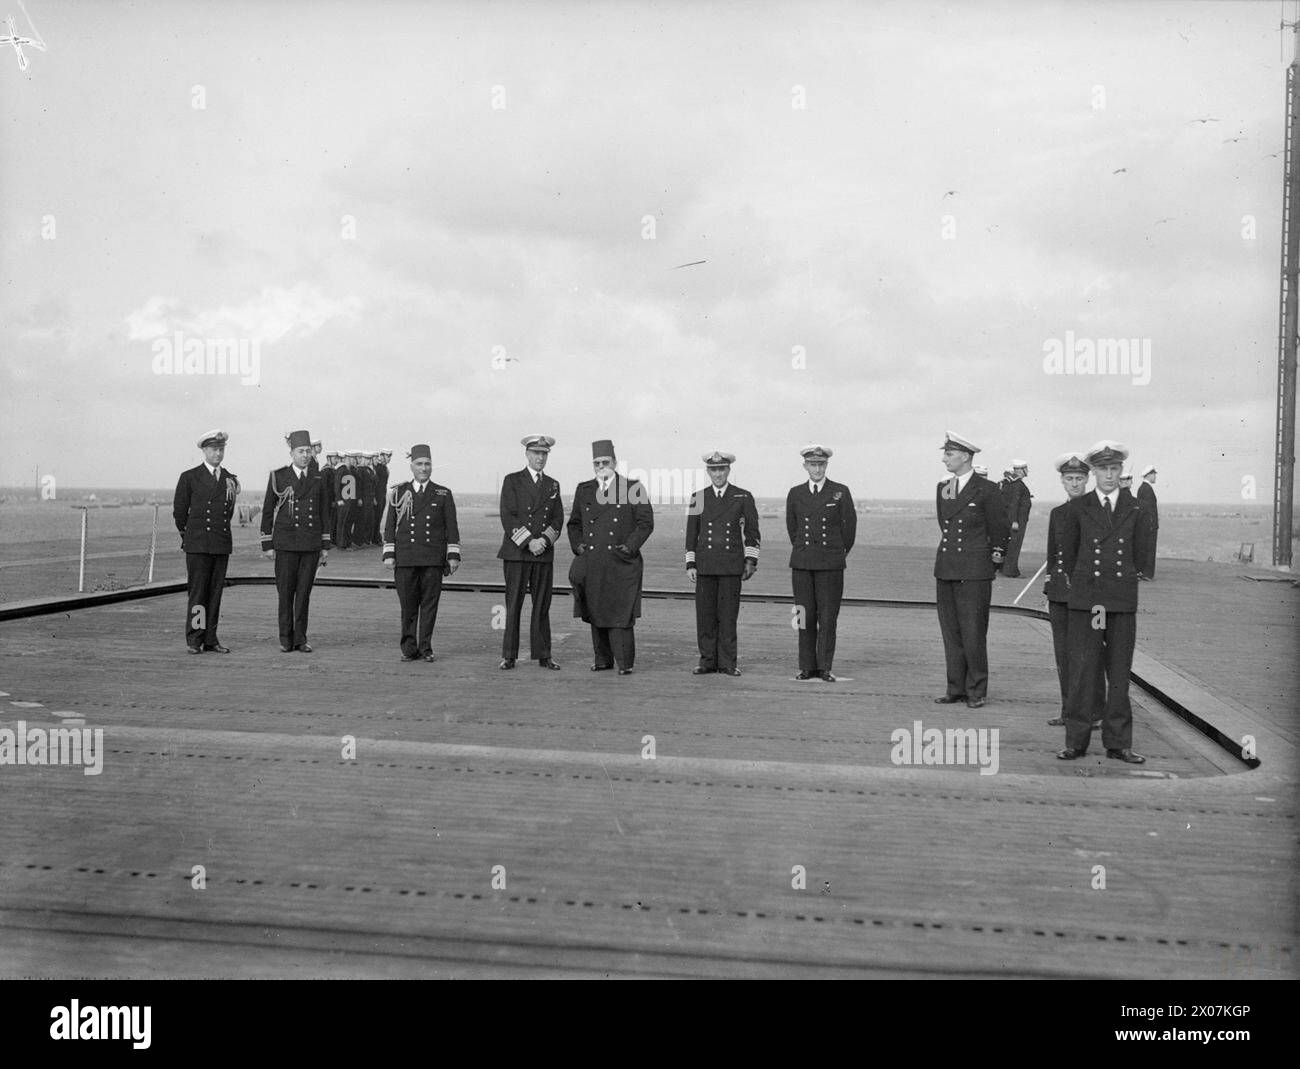 LE ROI FAROUK VISITE LE PORTE-AVIONS D'ESCORTE BRITANNIQUE. MARS 1945, À BORD DU HMS HUNTER, ALEXANDRIE, ÉGYPTE. - Le roi Farouk avec le vice-amiral Tennant et son état-major montant au pont d'envol du HUNTER au moyen de l'ascenseur de l'avion Banque D'Images